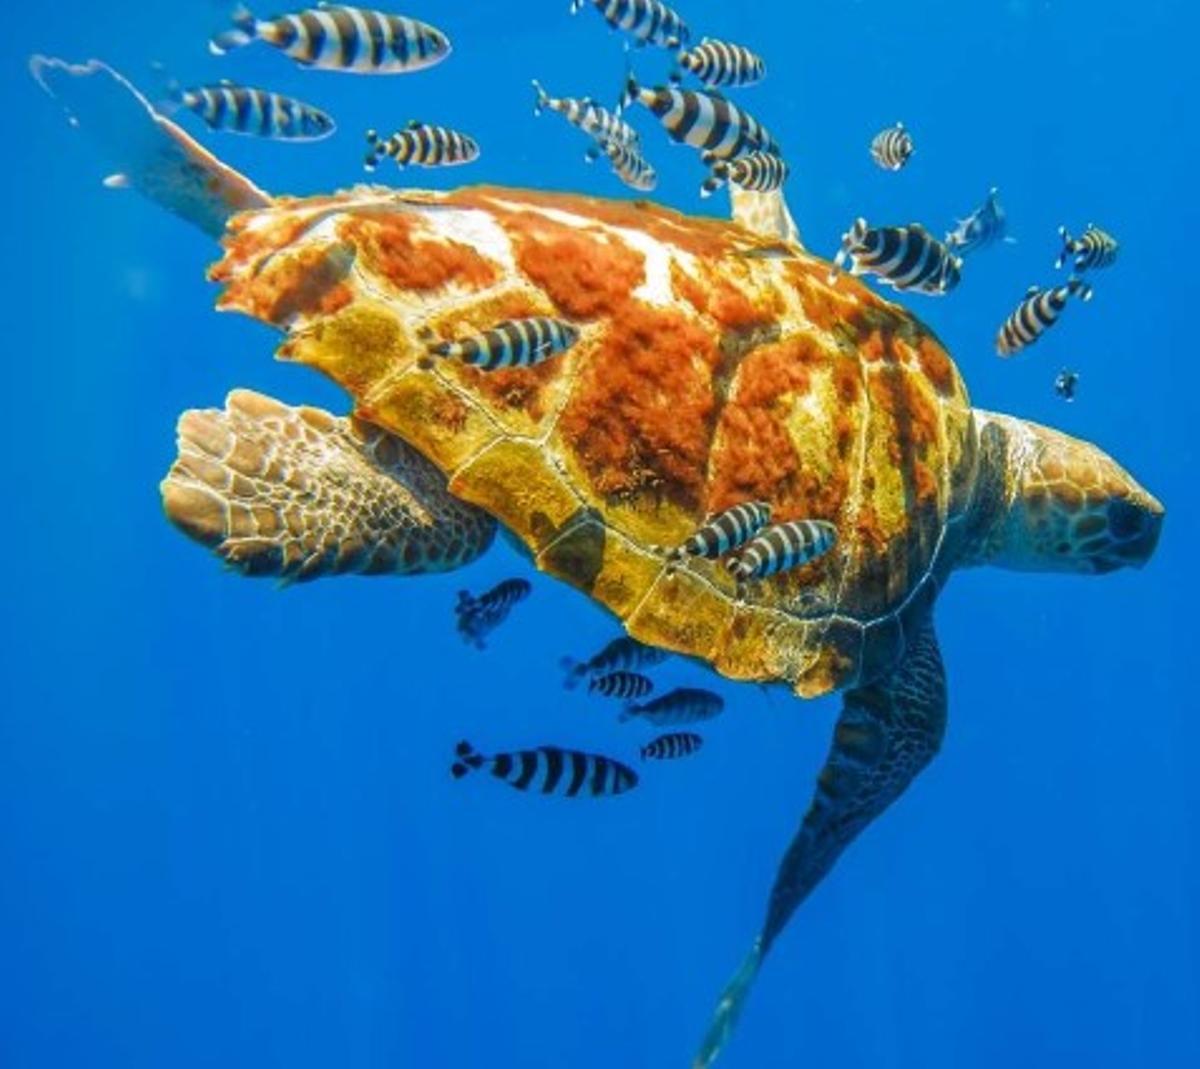 Imagen que usa el Ministerio para divulgar su campaña de preservación de las tortugas marinas.